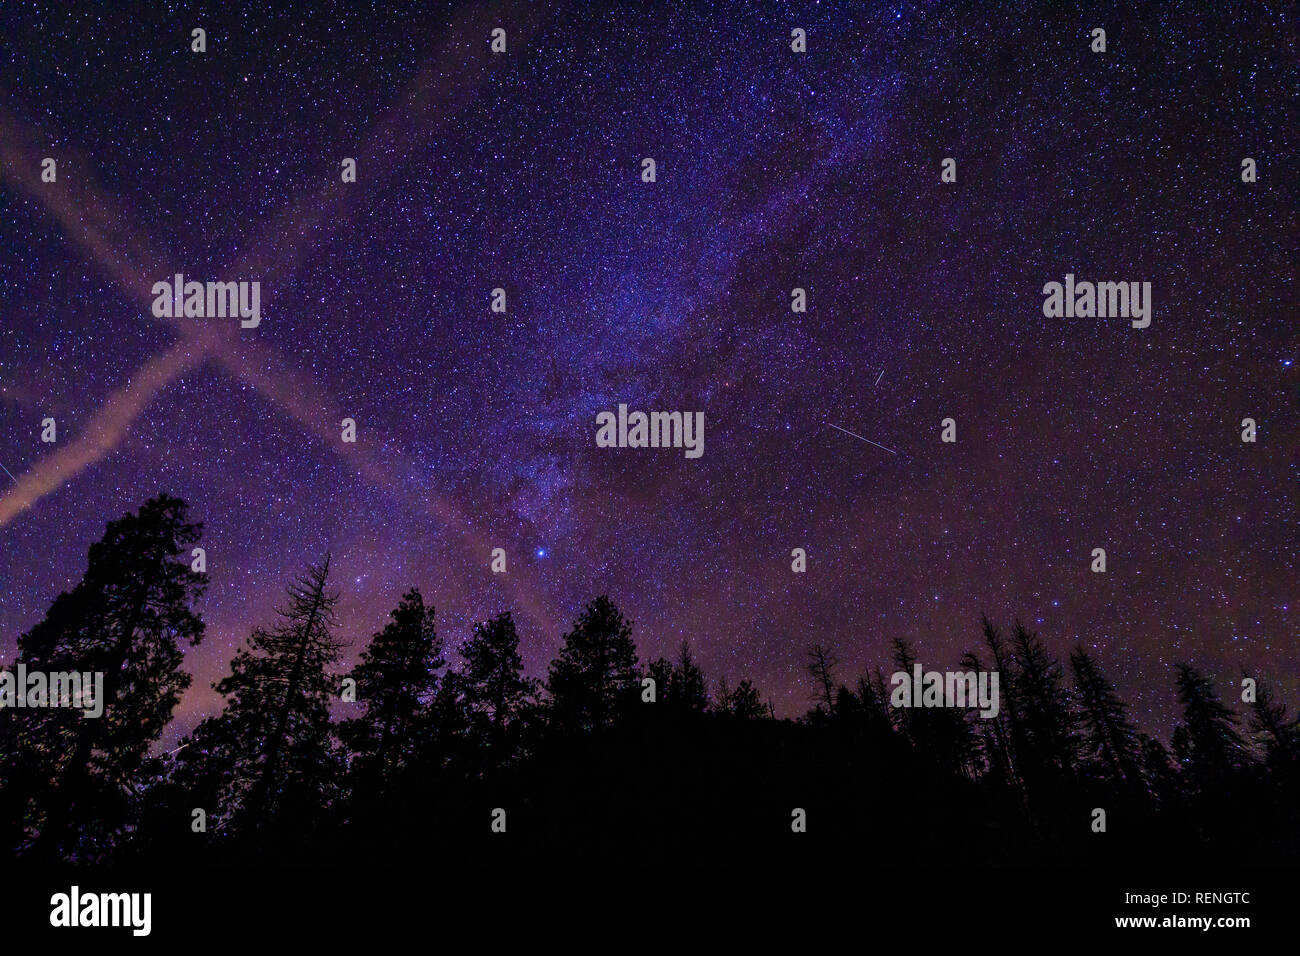 Les étoiles et la Voie Lactée illustrée de vue sur la vallée de Yosemite National Park, Californie pendant la fermeture partielle du gouvernement des États-Unis ; où limted serv Banque D'Images